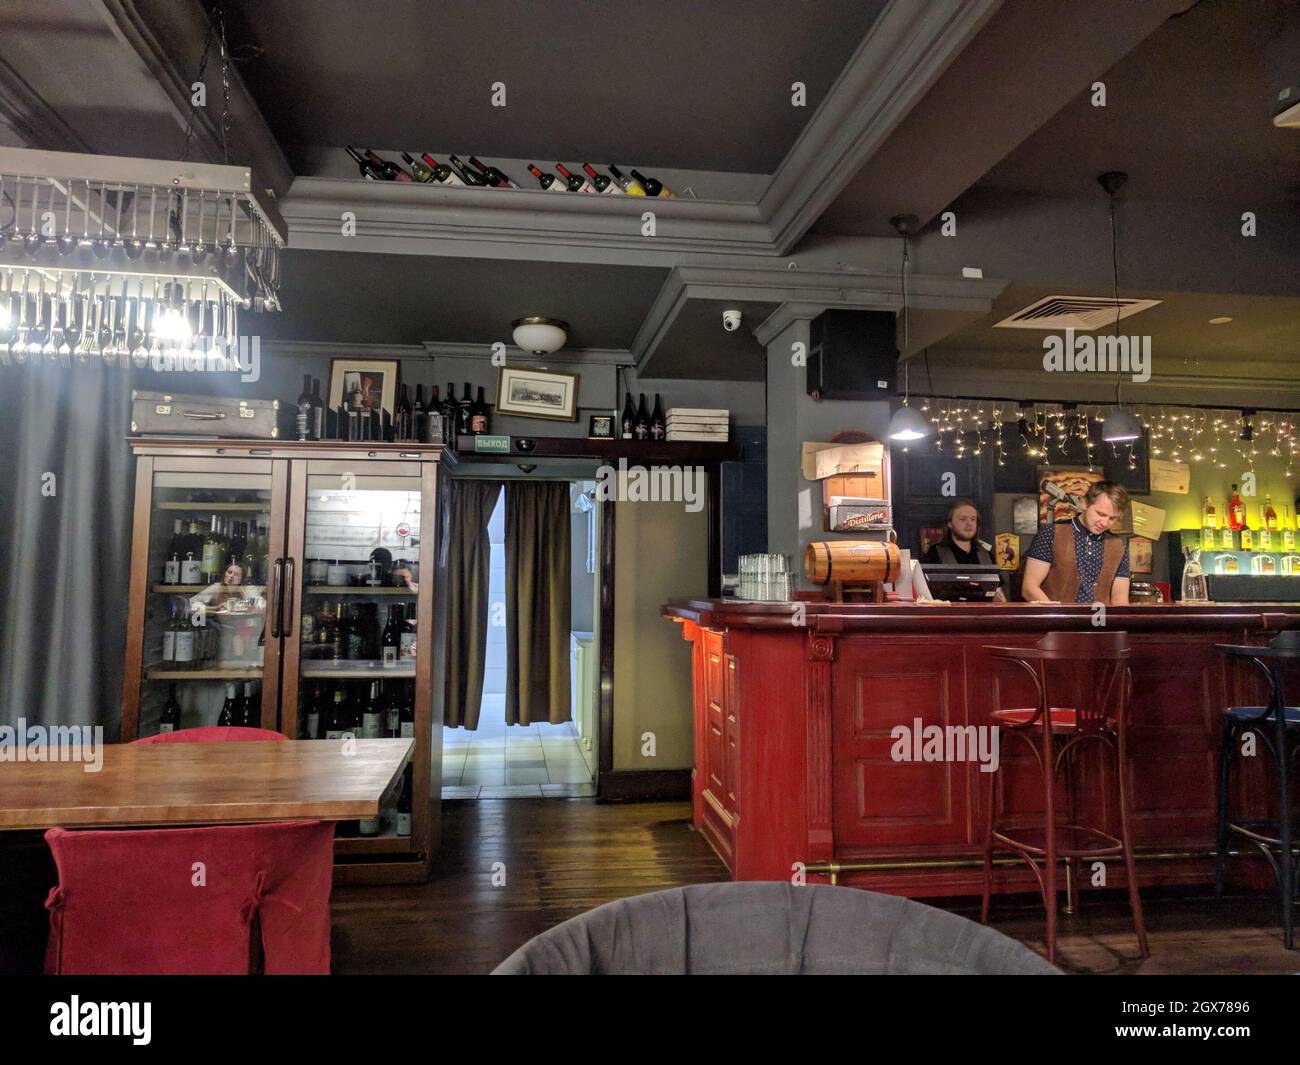 Izhevsk, Russia - July 05 2019: interior view of Pryany Krolik restaurant on July 05 2019 in Izhevsk, Russia. Stock Photo